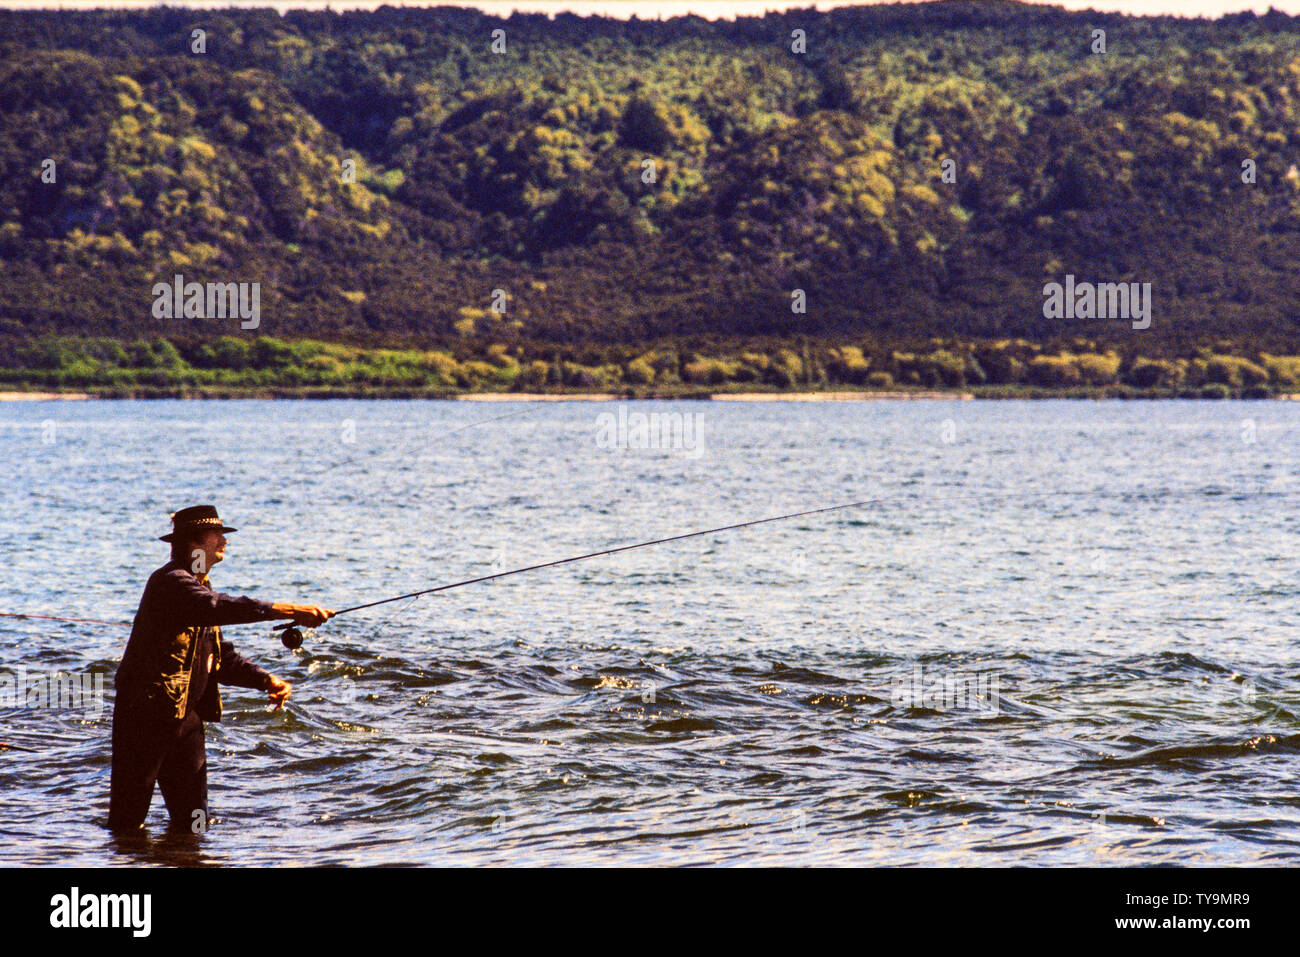 Nouvelle Zélande, île du Nord. Man fishing in Lake Taupo, un relevé des stocks de pêche de la truite et de la truite brune introduit. Photo : © Simon Grosset. Banque D'Images